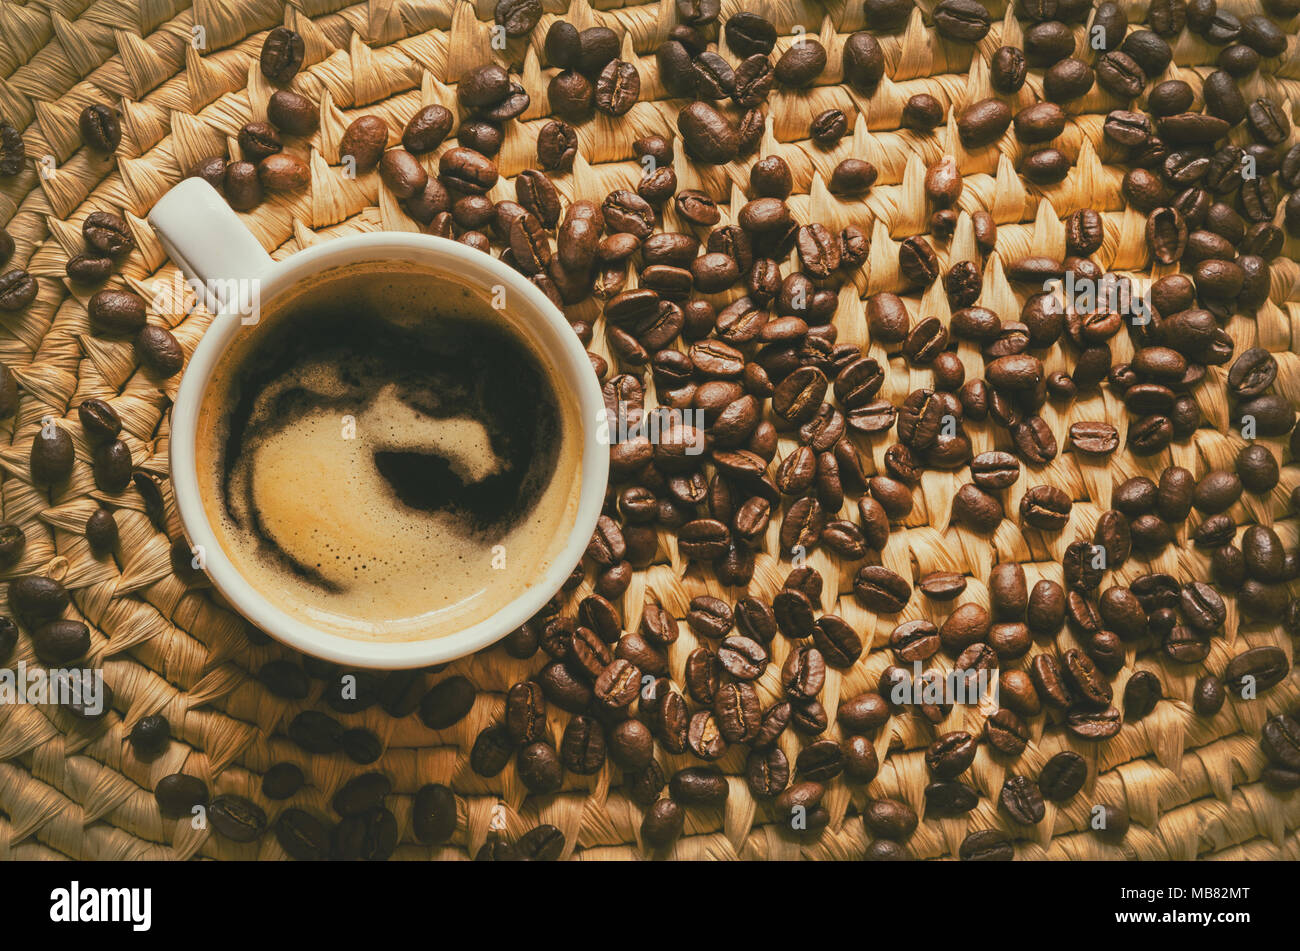 Vista superior de la taza de café y granos de café expreso en una bandeja de servir tejida Foto de stock